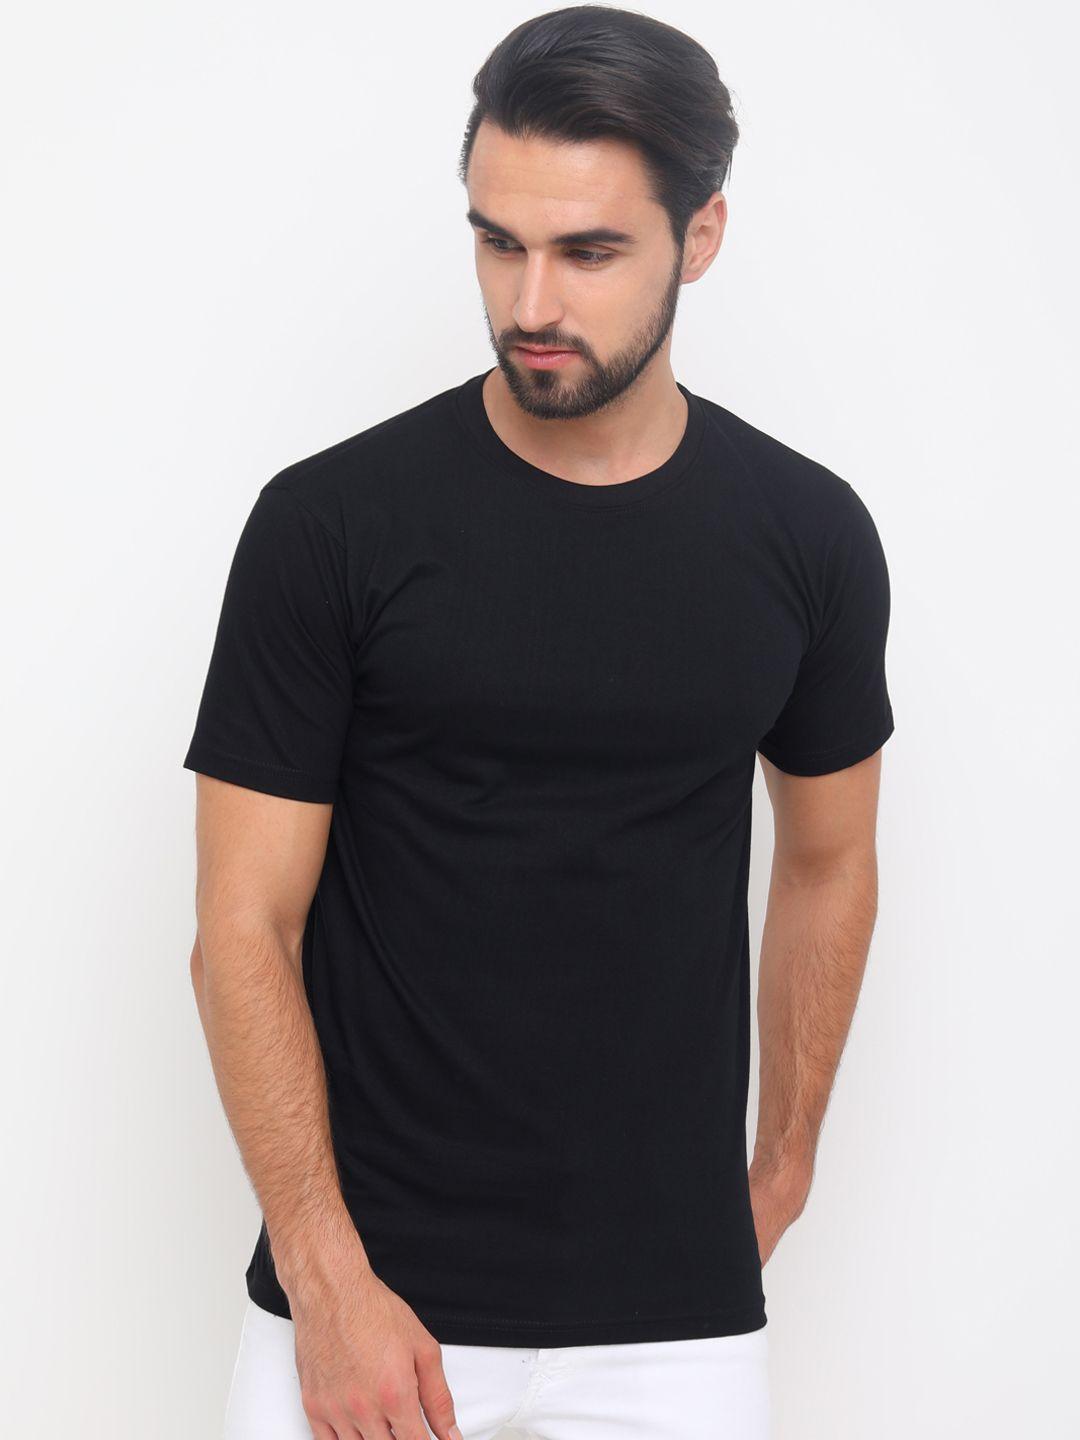 bushirt men black solid round neck pure cotton t-shirt